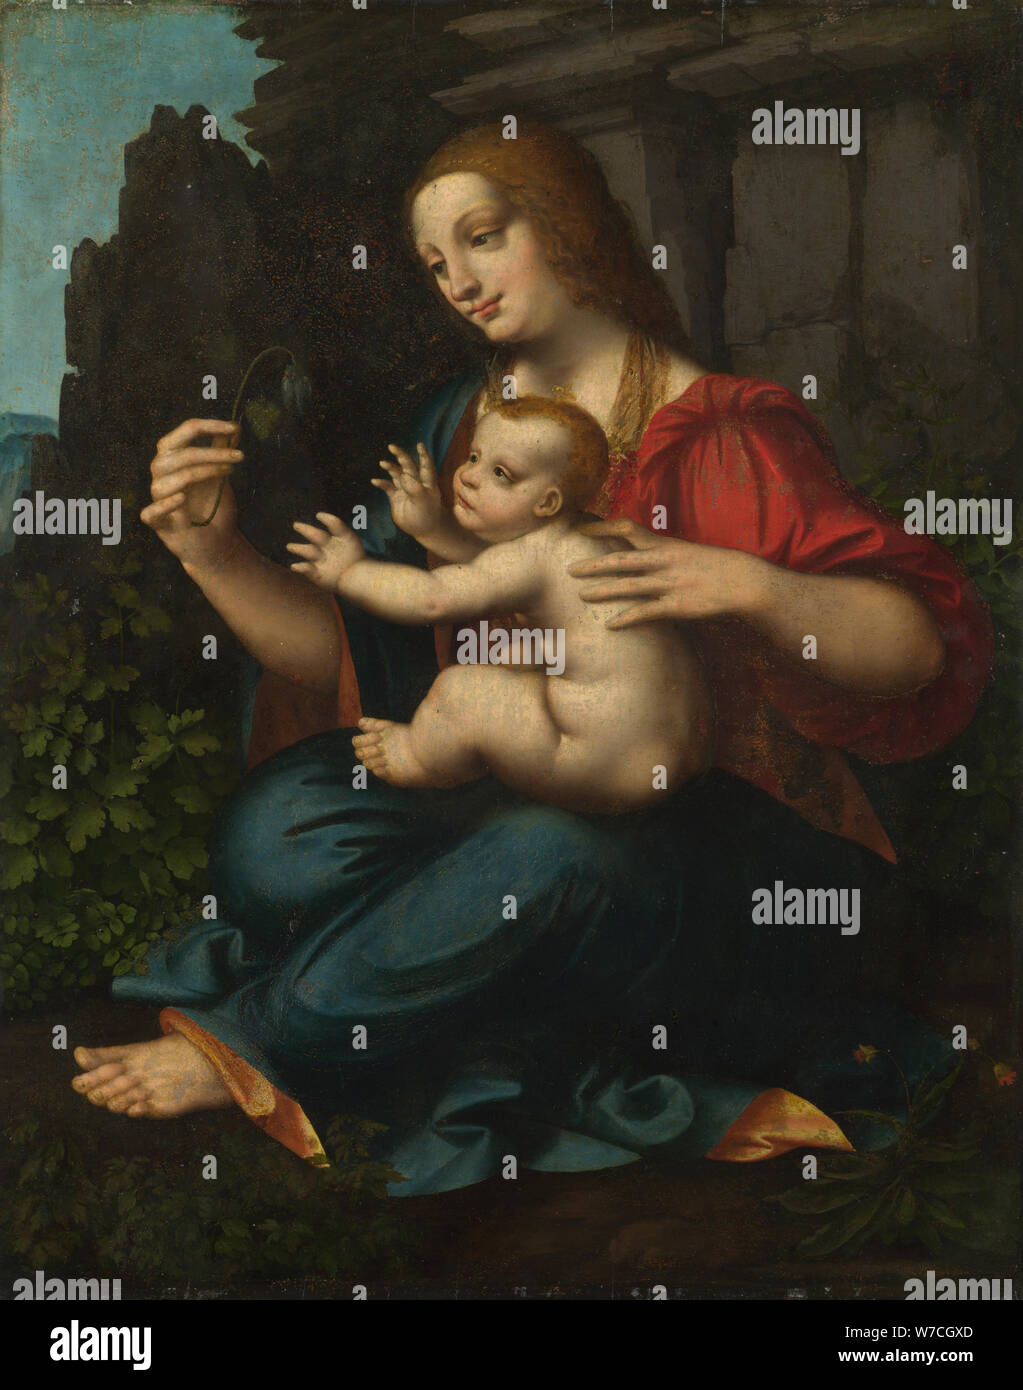 La Virgen y el Niño, c1520. Foto de stock